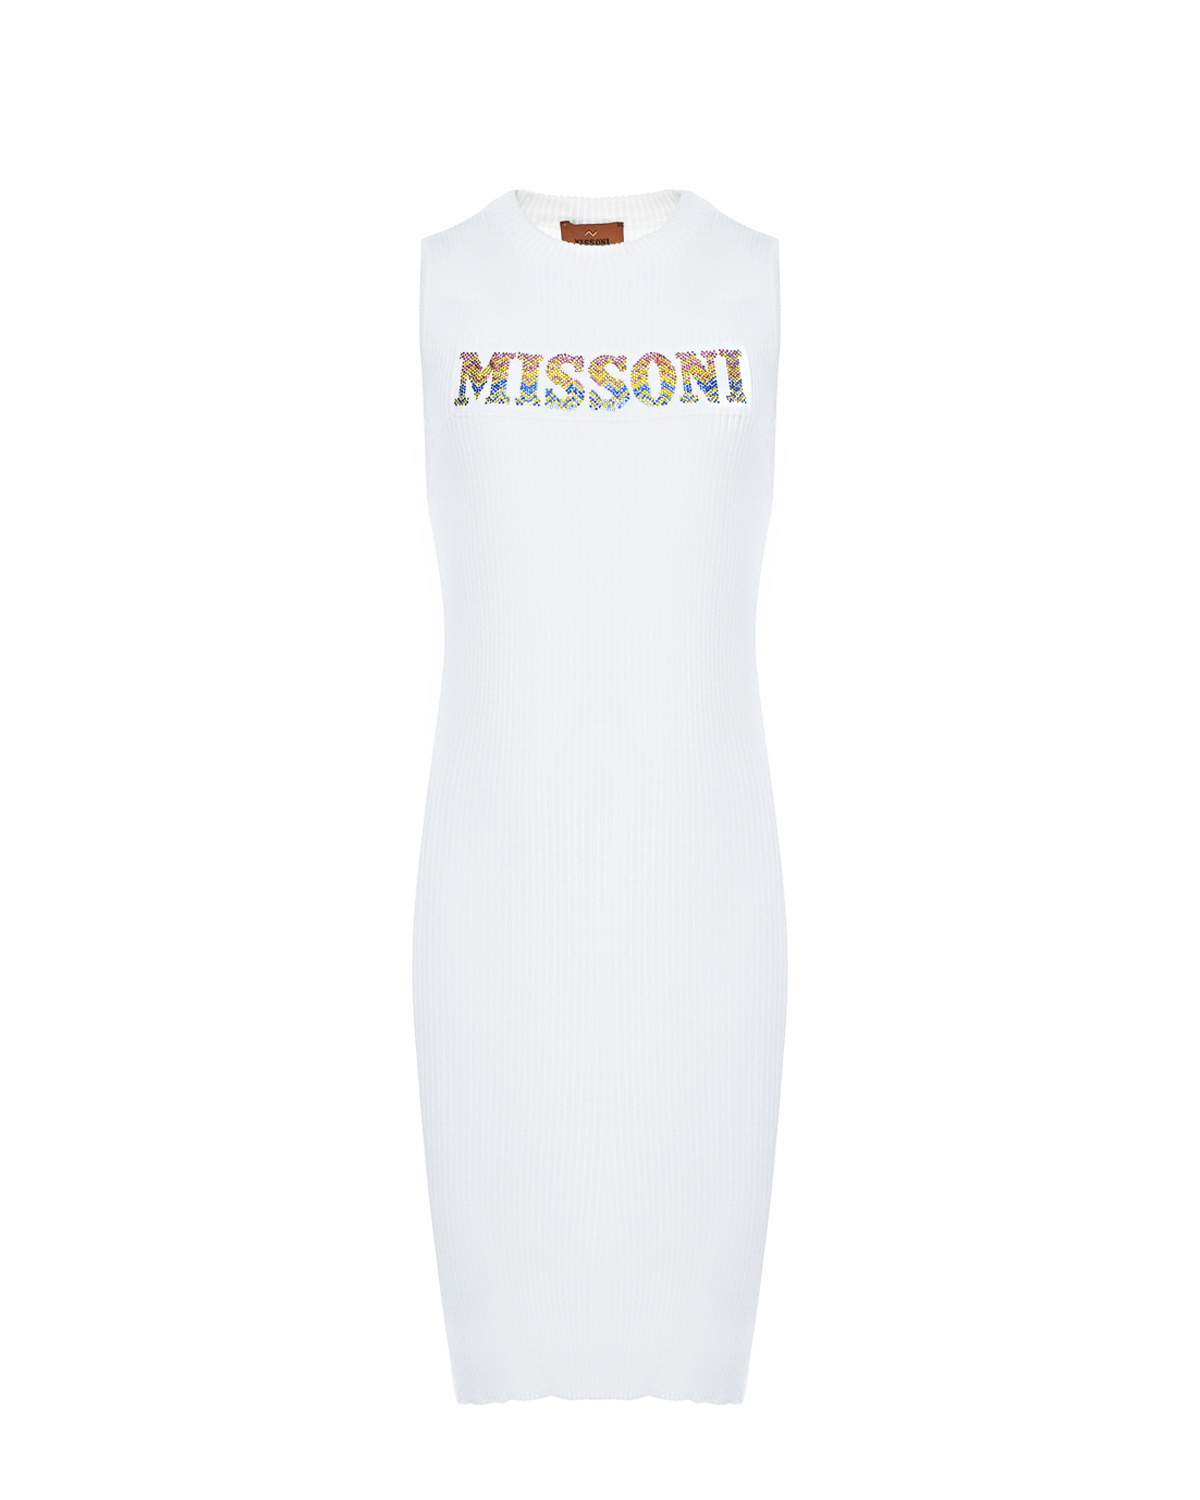 Платье с лого из стразов Missoni, размер 152, цвет нет цвета - фото 1